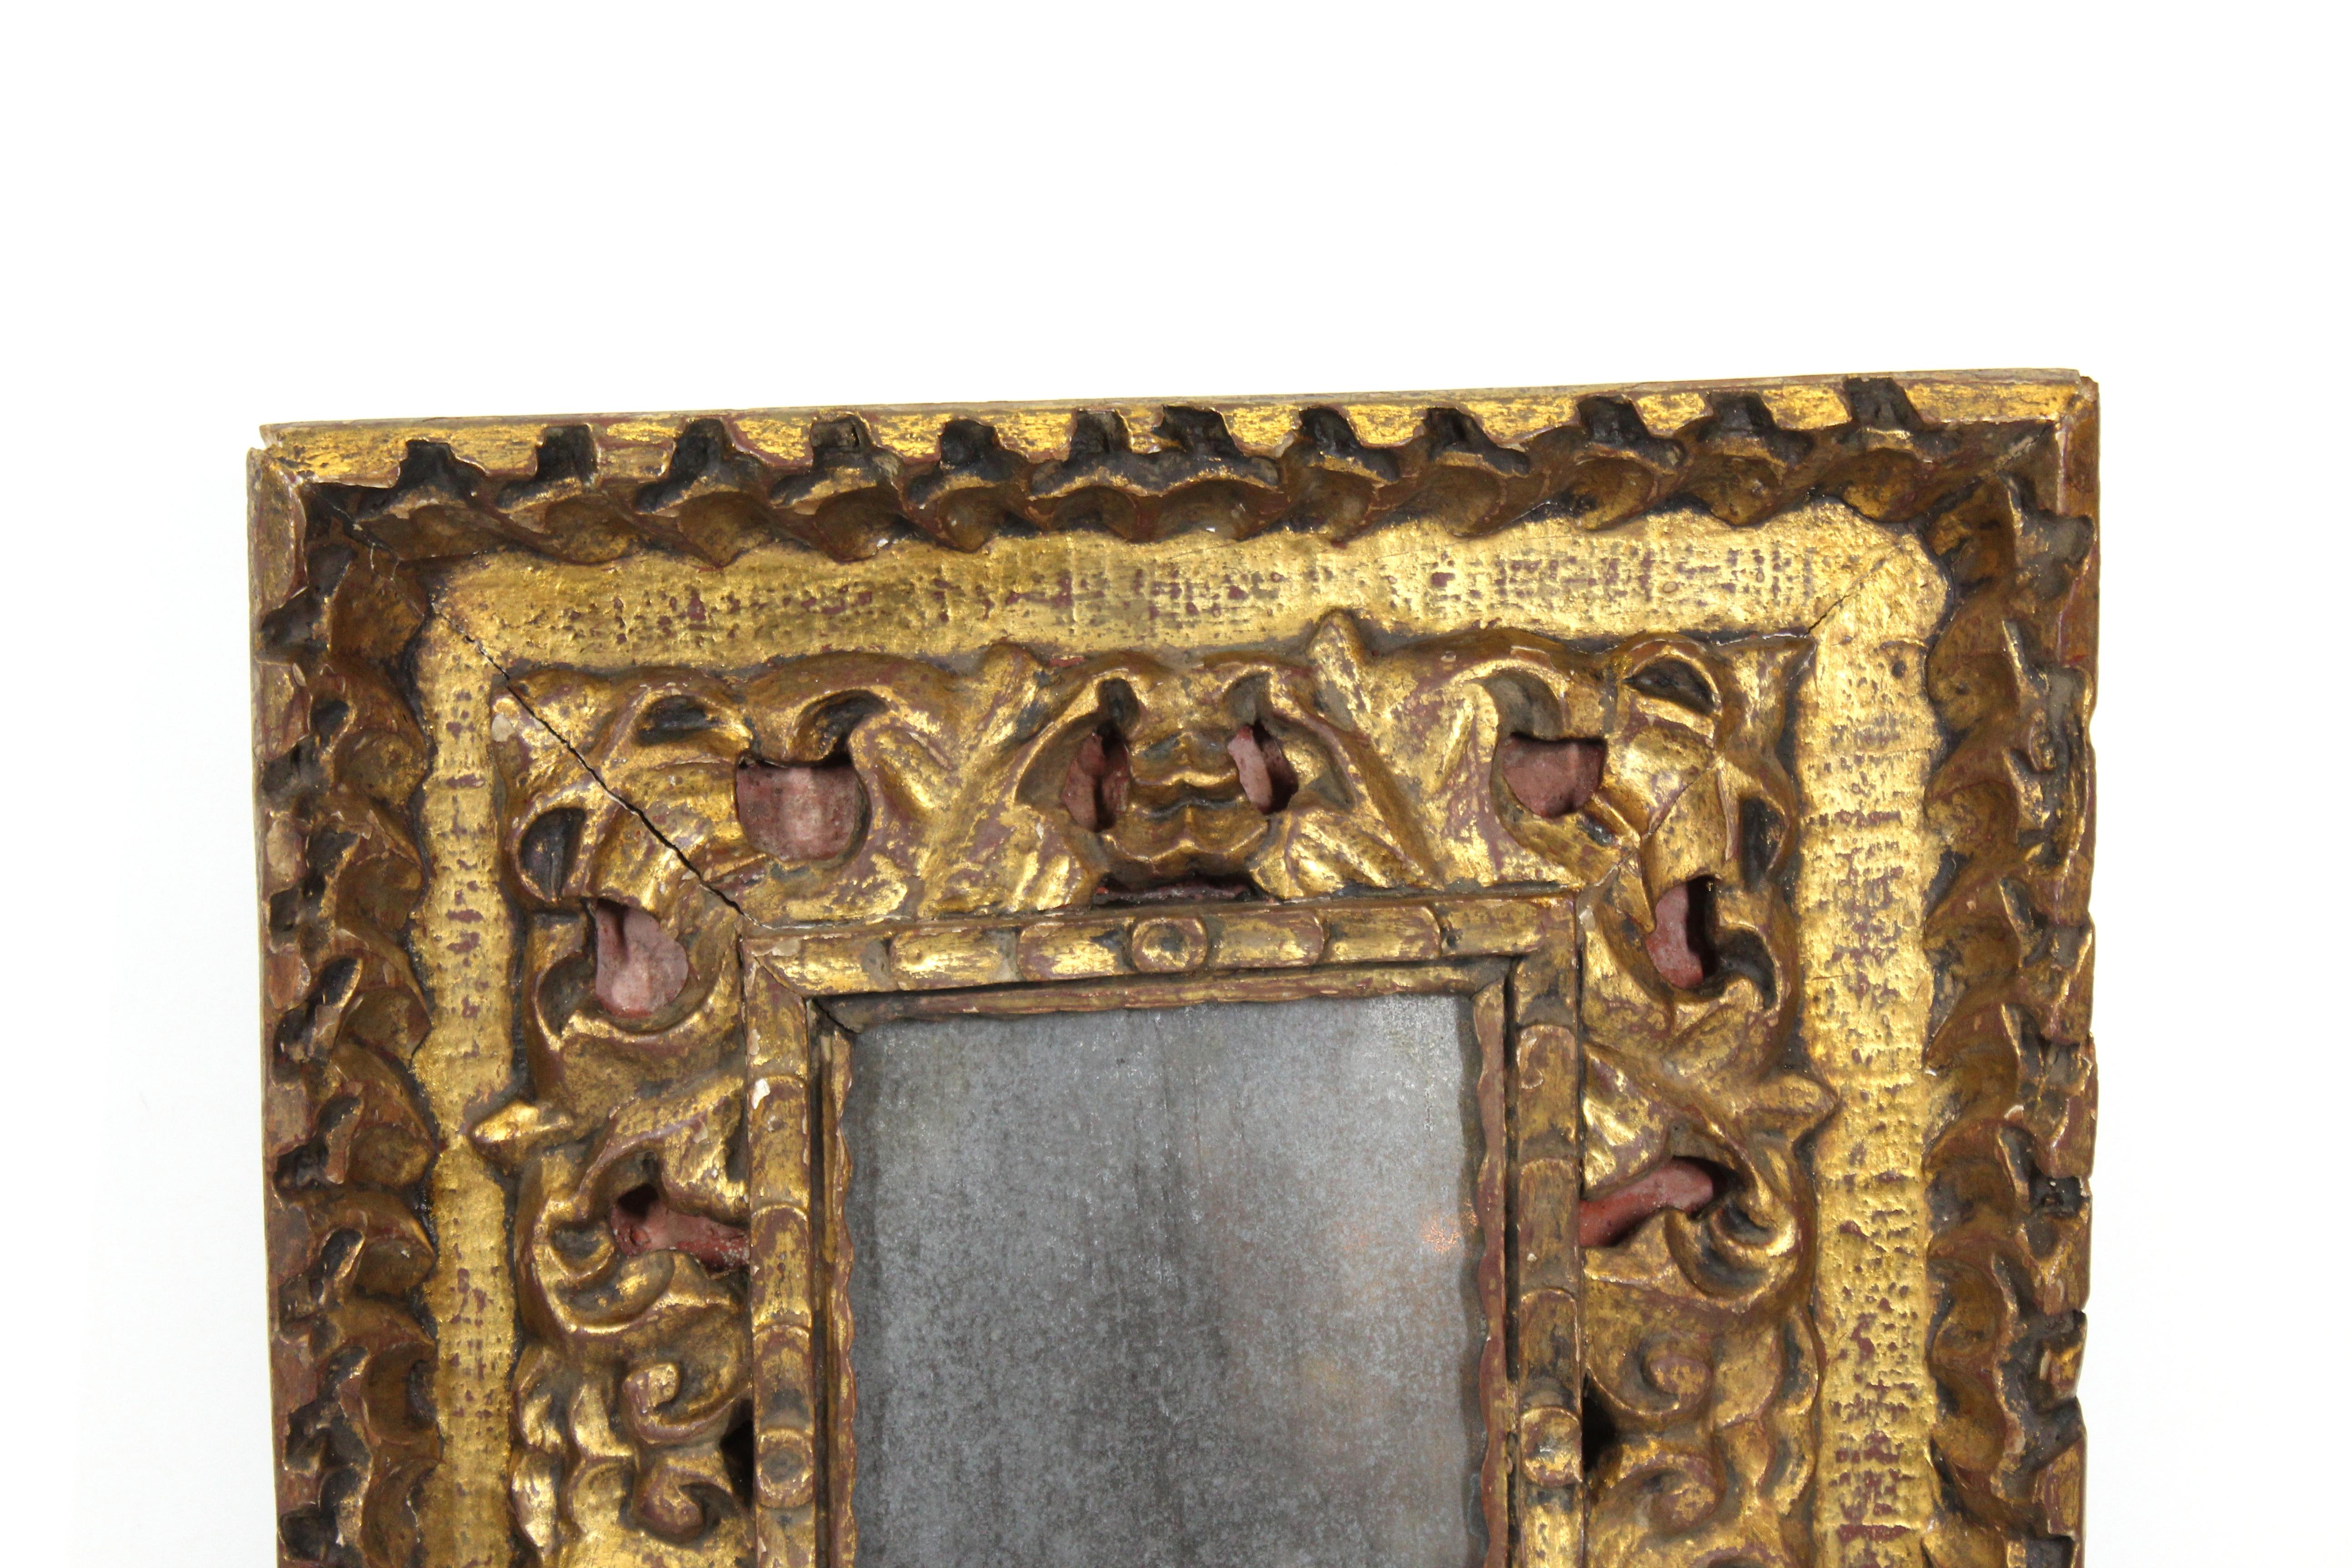 Cadre baroque continental en bois doré avec un feuillage fortement sculpté et une couleur de fond rouge. Probablement fabriquée en Europe au début du XIXe siècle, cette pièce est accompagnée d'un miroir ancien. En excellent état antique avec une